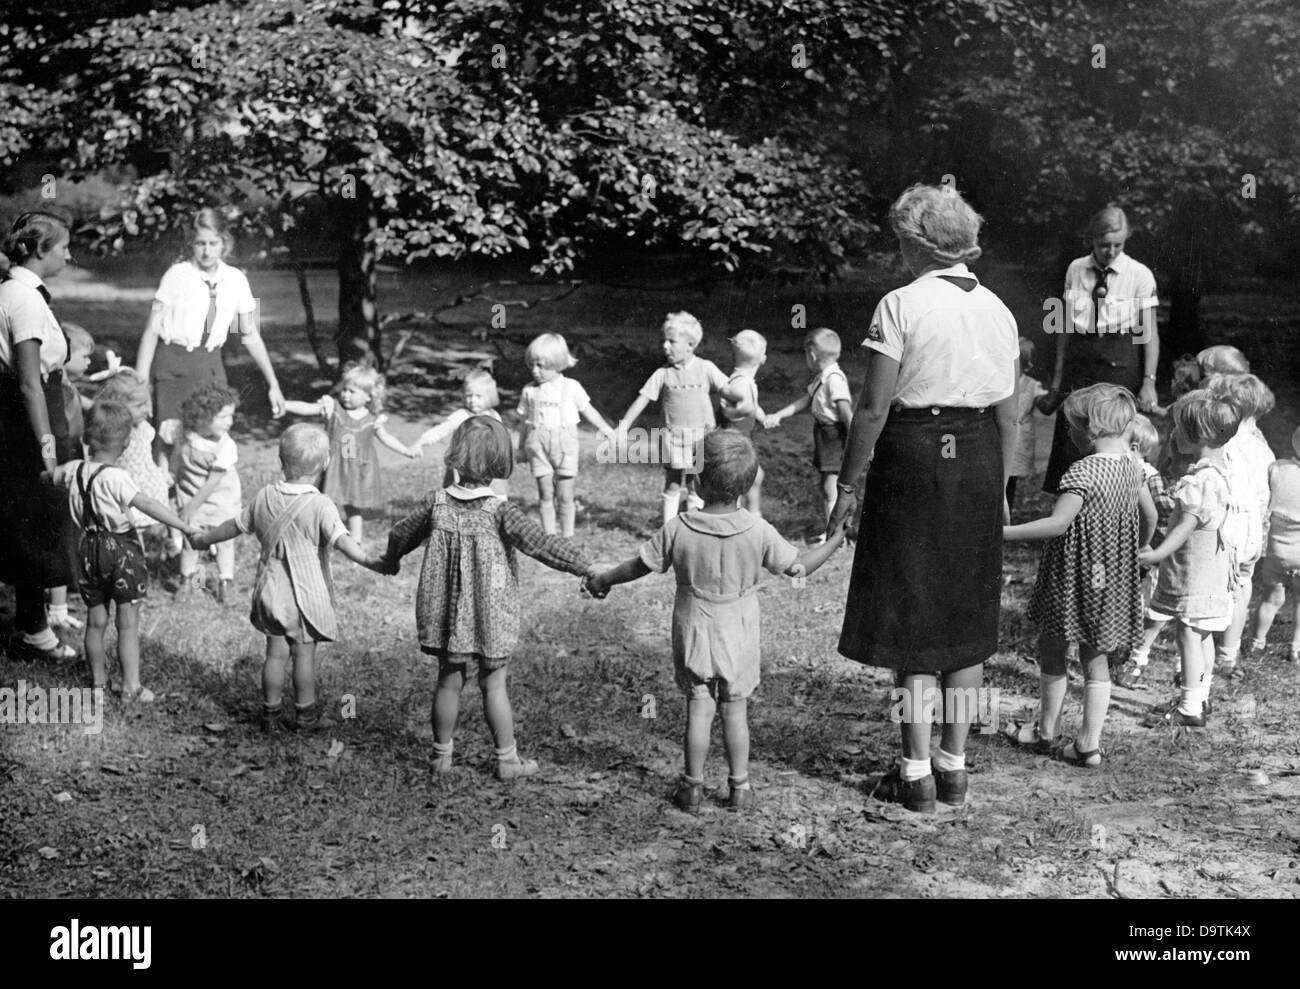 Les filles de la Ligue allemande des filles (BDM) s'occupent d'enfants dans une maison d'enfants du bien-être national socialiste du peuple (NSV), en septembre 1939. Fotoarchiv für Zeitgeschichte Banque D'Images